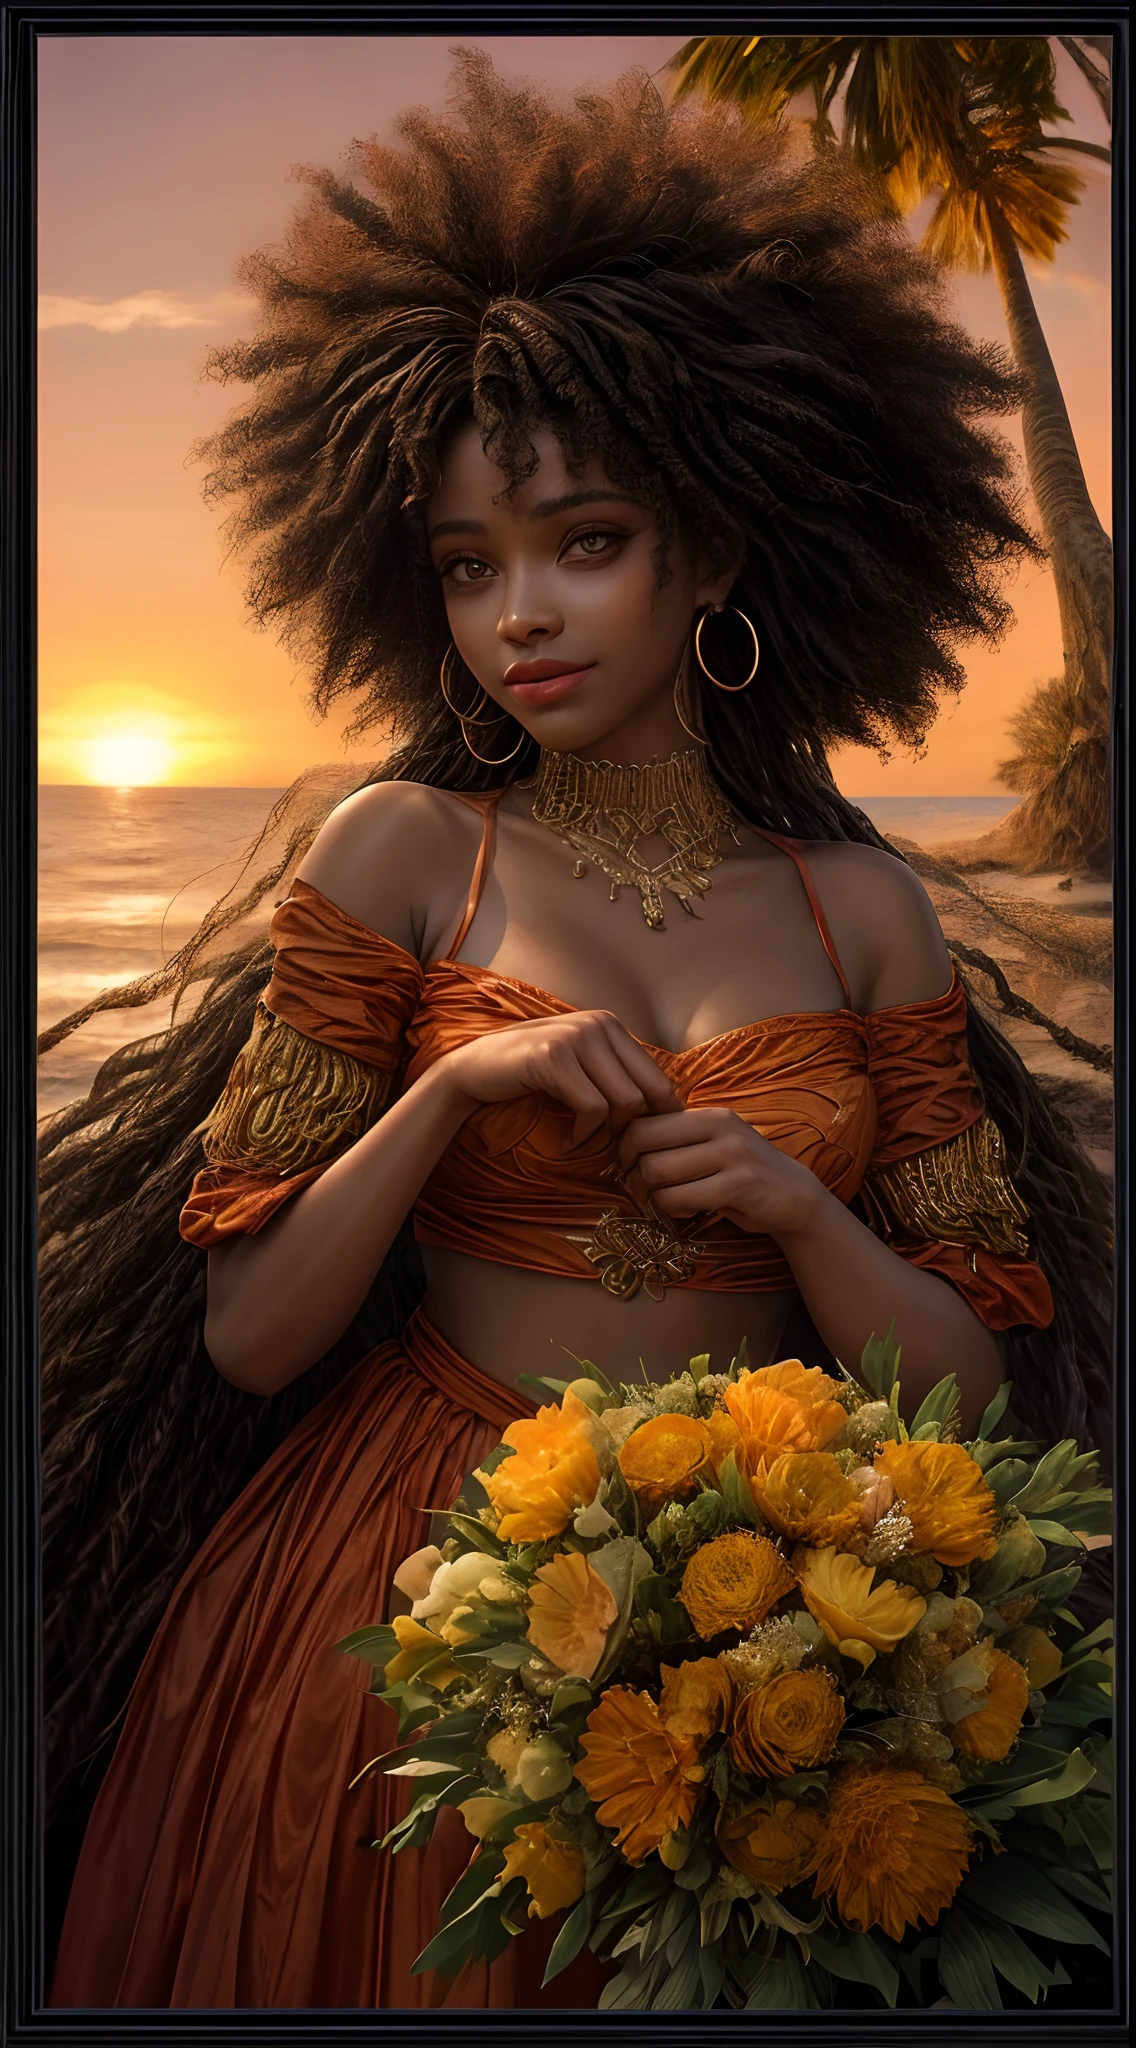 Um close-up do rosto de uma mulher afro-americana, banhado em tons quentes de laranja, como se iluminado pelo brilho suave de um pôr do sol, seus olhos brilhando de alegria e contentamento, emoldurados por fios de cabelo esvoaçantes, fotografia, fotografada com uma lente de 35mm